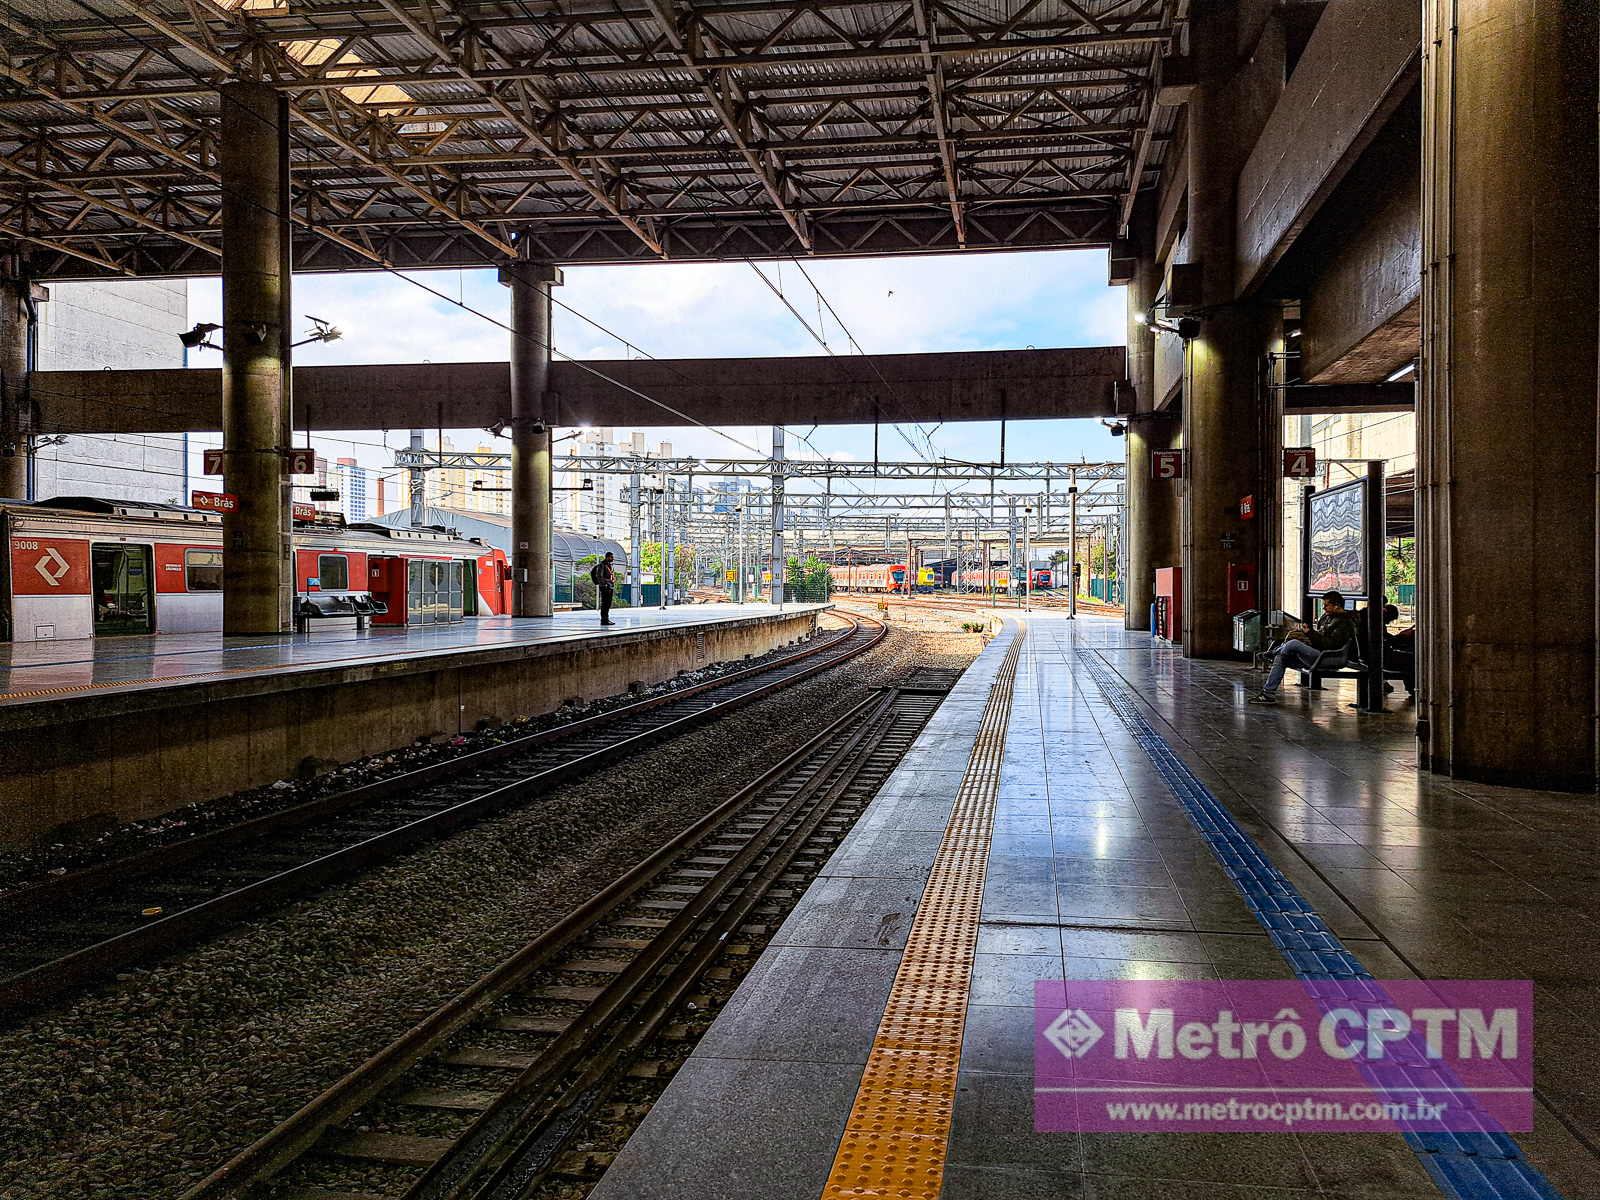 CPTM deverá reativar plataforma 5 da estação Brás - Metrô CPTM